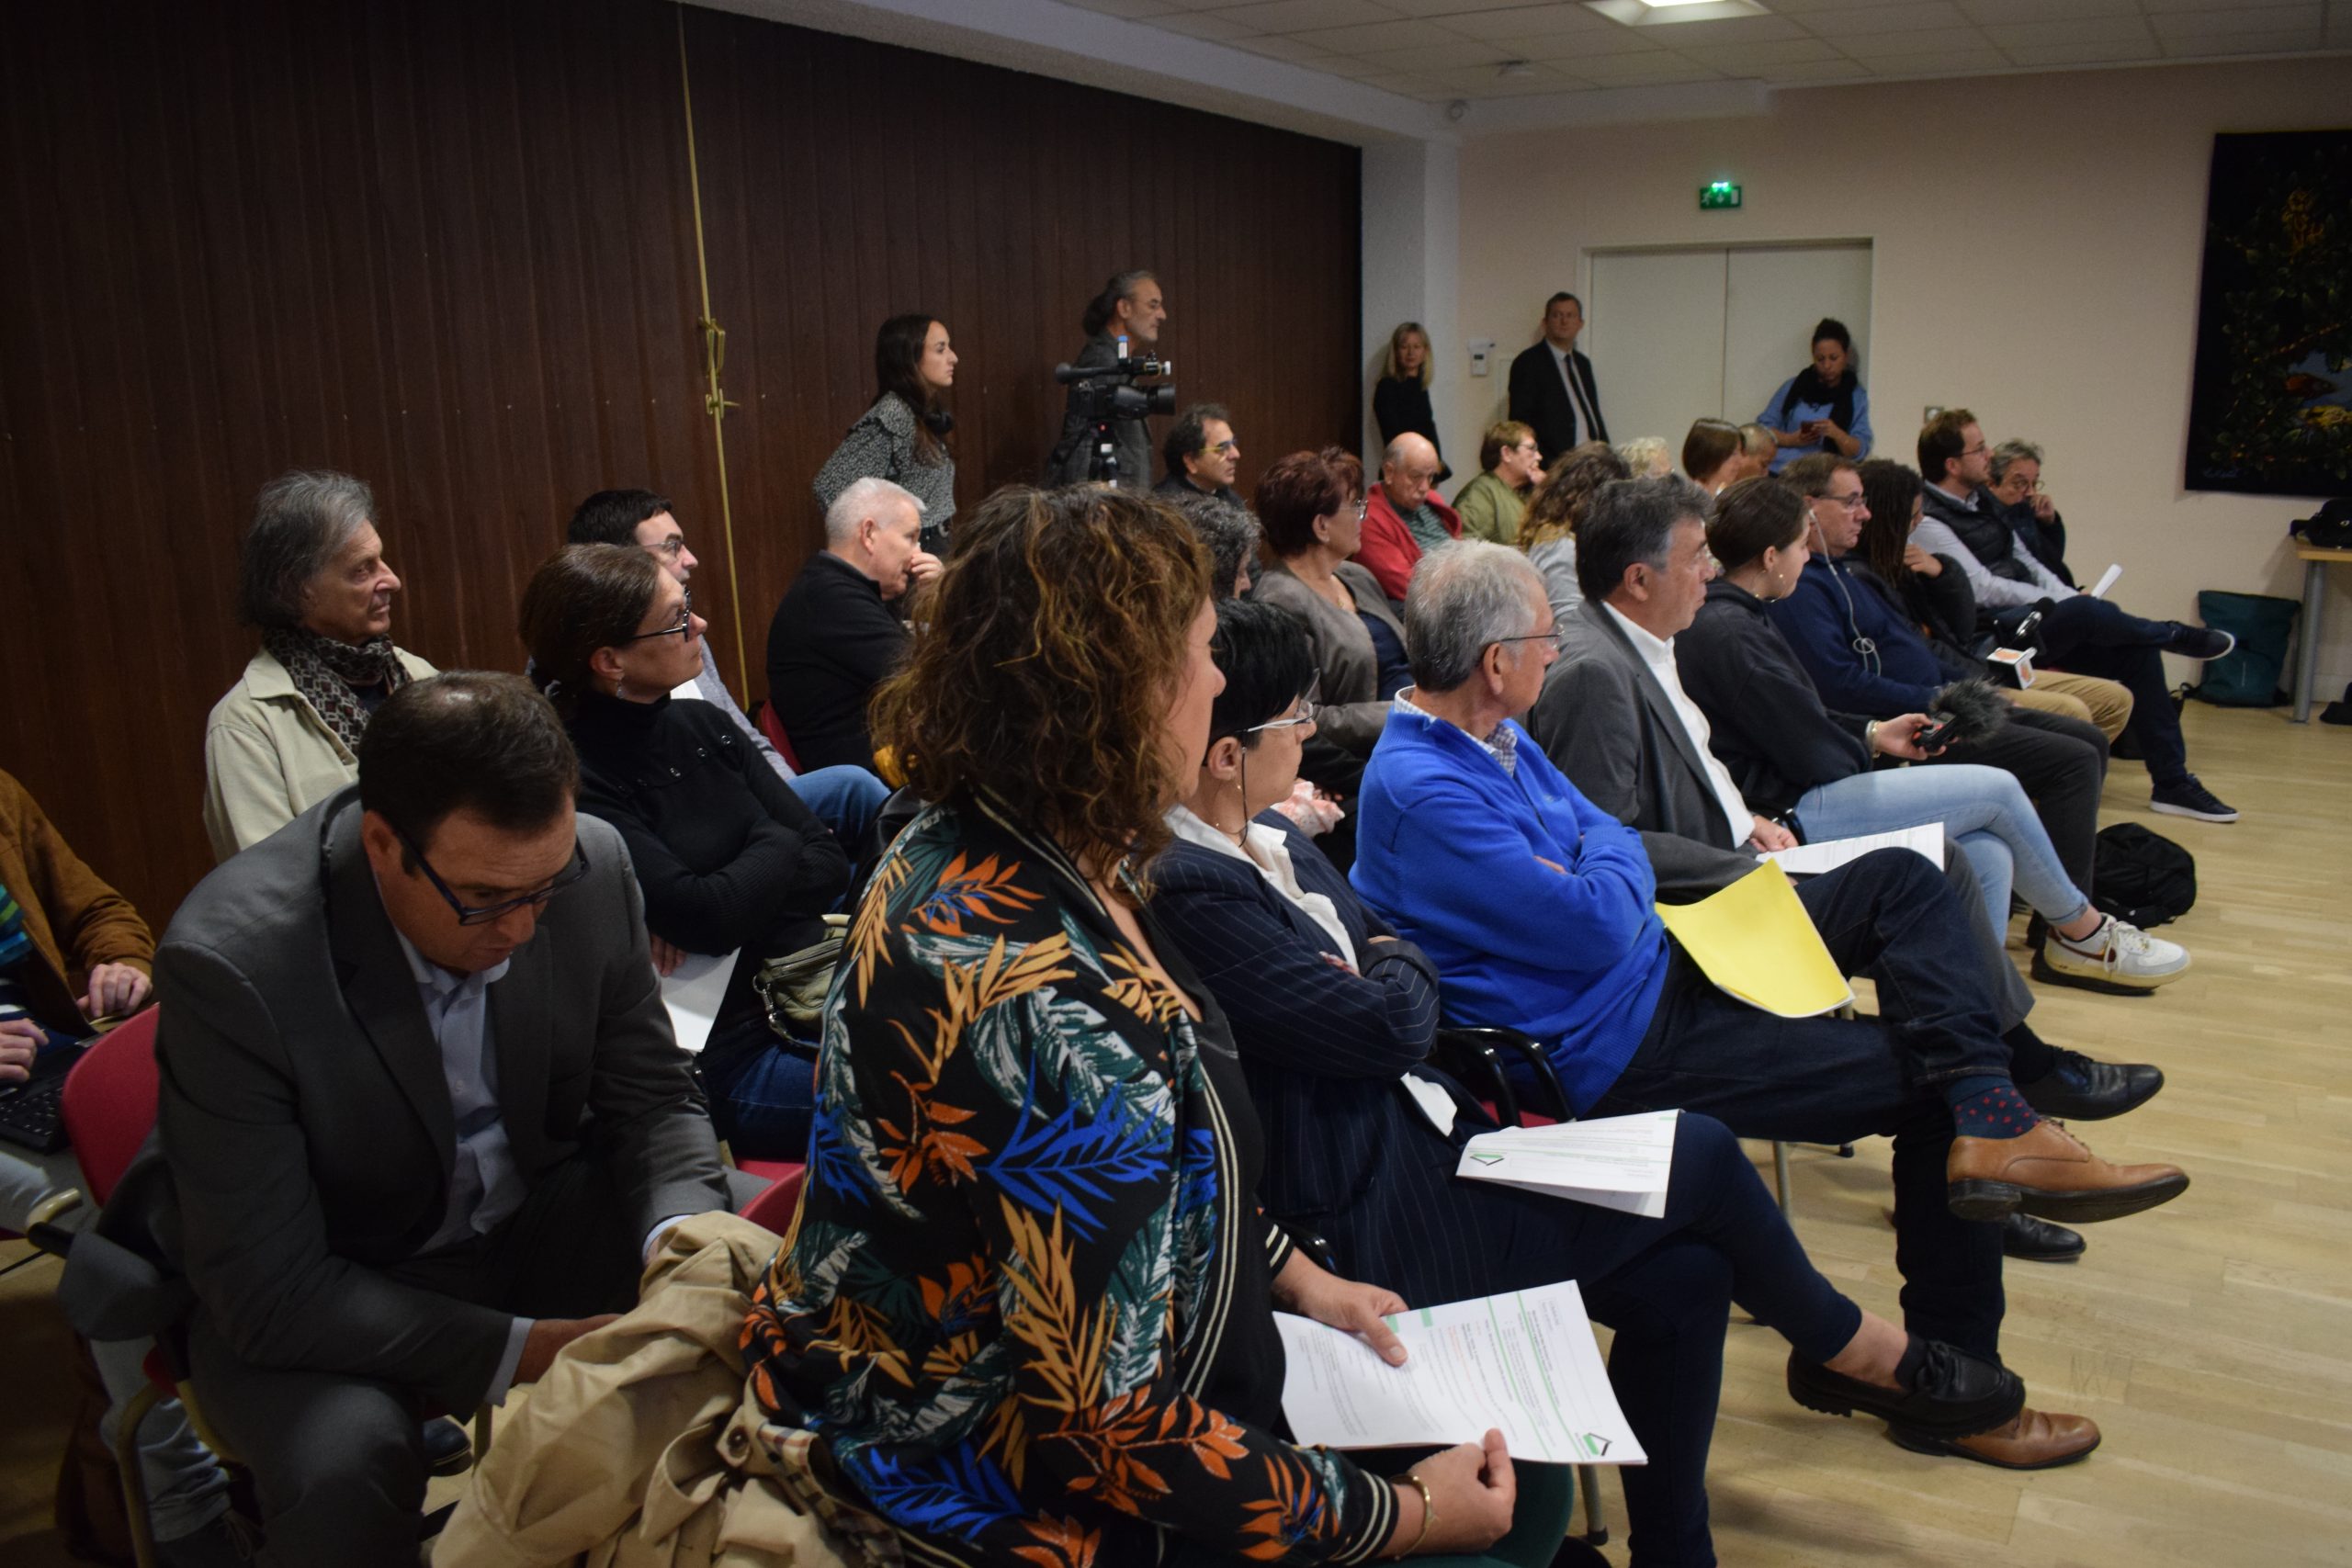 Le dispositif ''Mes nouveaux voisins'' a été présenté par sa fondatrice Sophie Le Gal devant une assemblée réunissant au sein d'une salle du conseil départemental de la Dordogne la majeure partie des maires des communes adhérentes au projet.